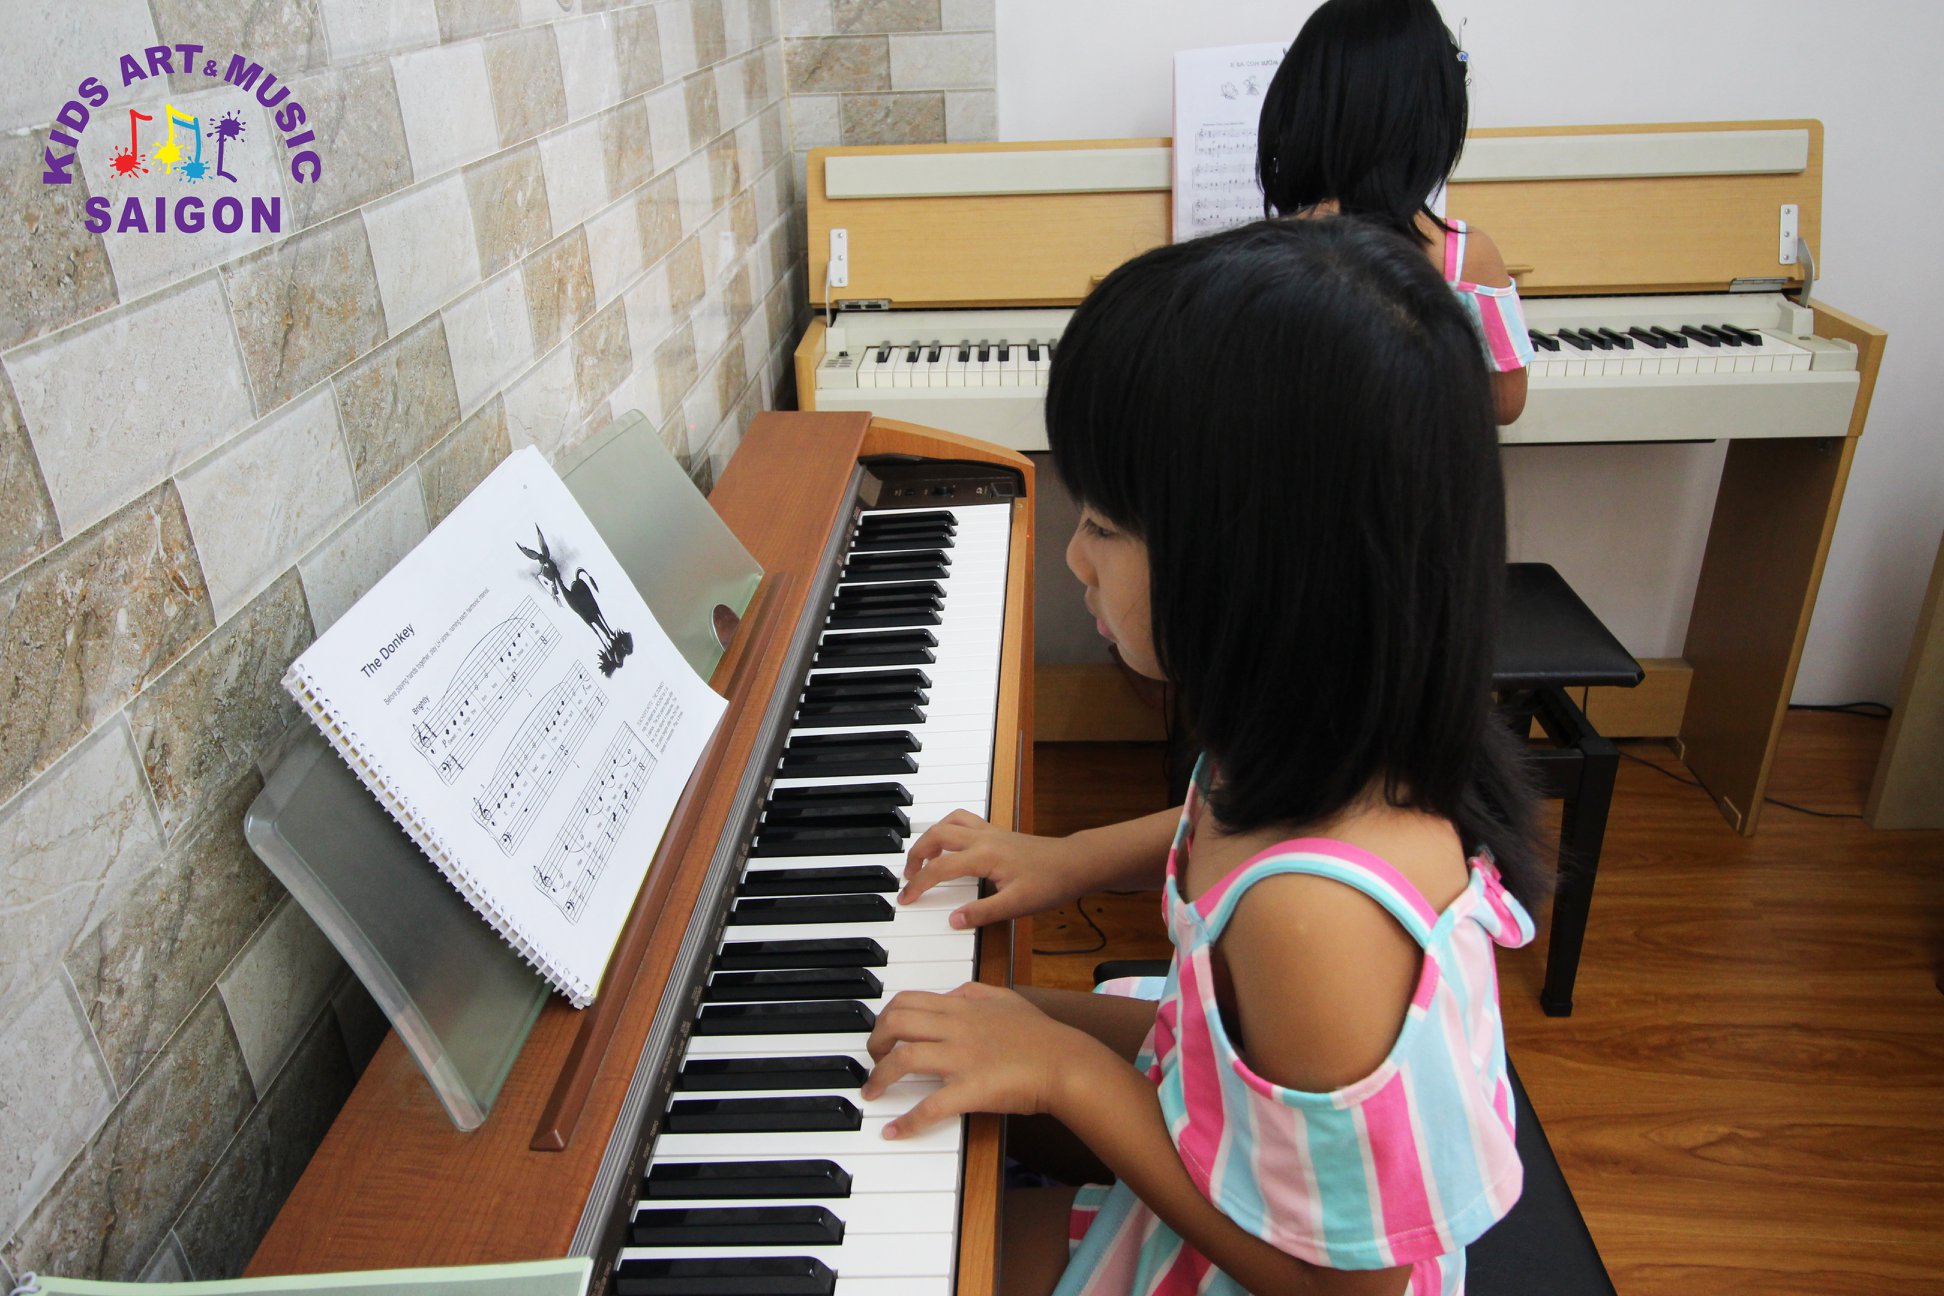 Lớp dạy đàn piano quận Bình Thạnh tpHCM hinh anh 1